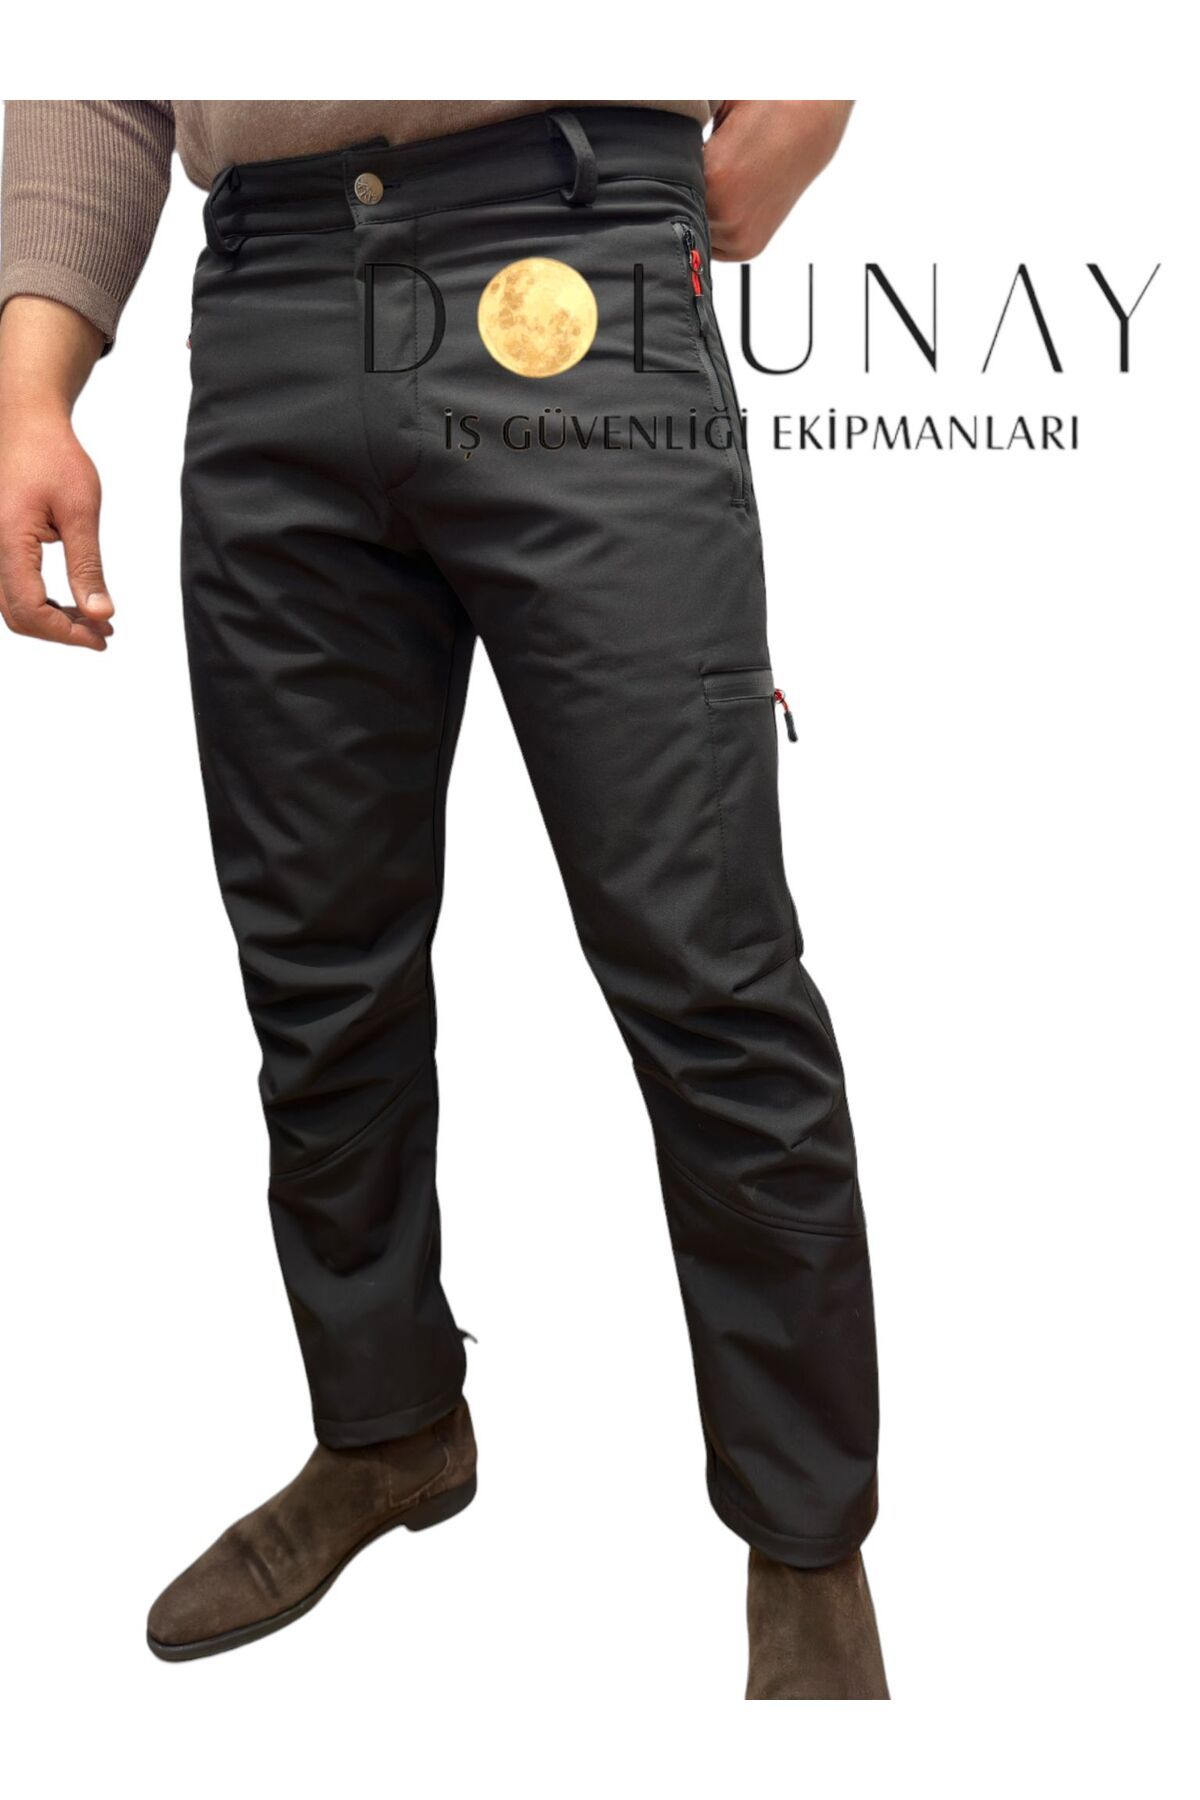 Dolunay İş Elbiseleri Erkek Içi Polarlı Tactical Outdoor Su Geçirmez Siyah Softshell Pantolon DOLUNAY İŞ ELBİSELERİ